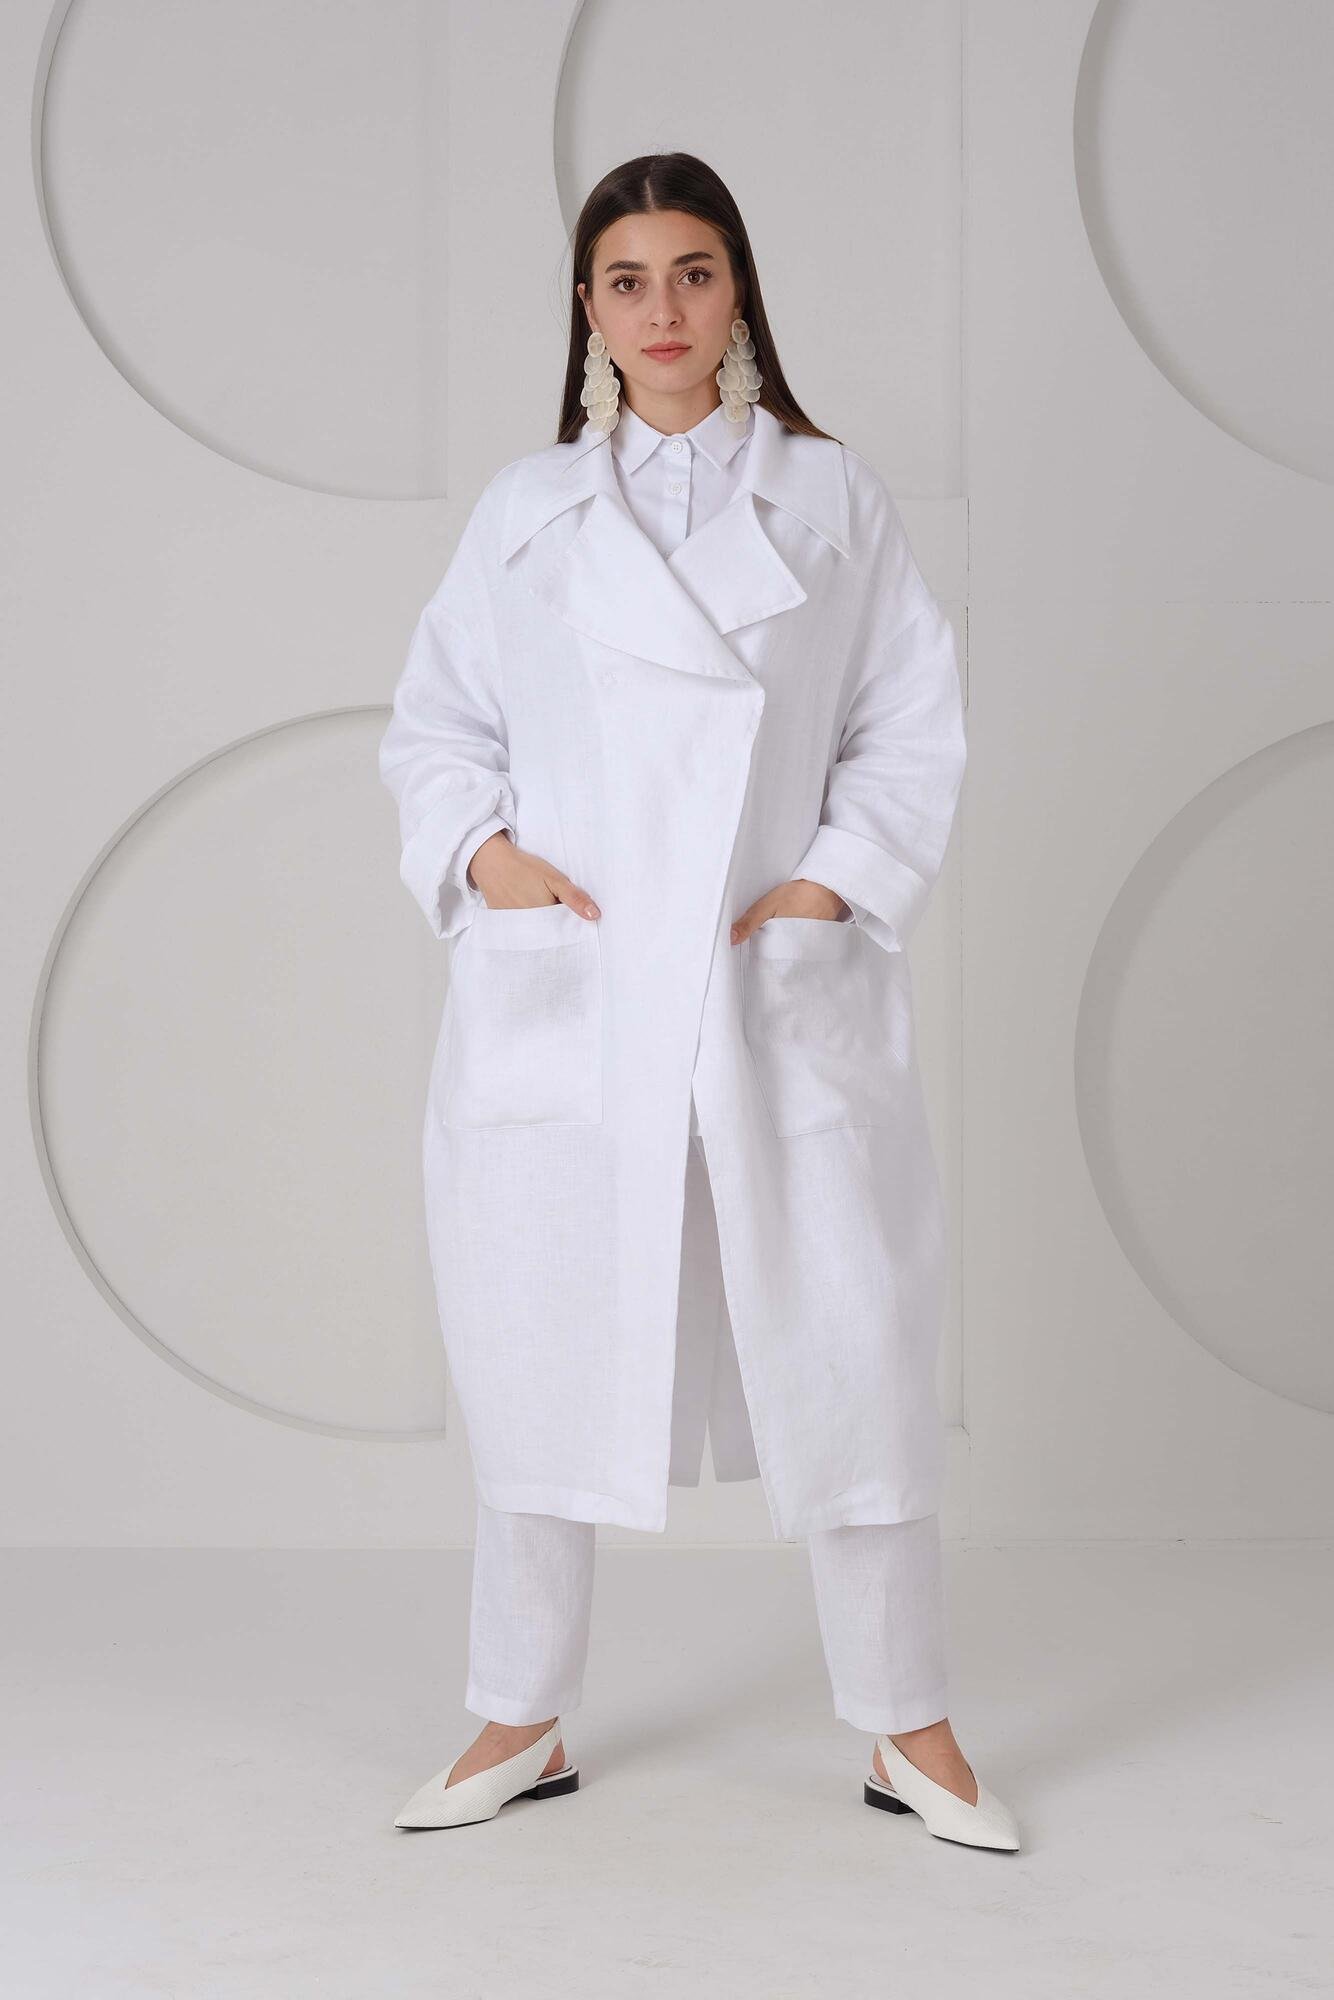 Raw White Linen Jacket